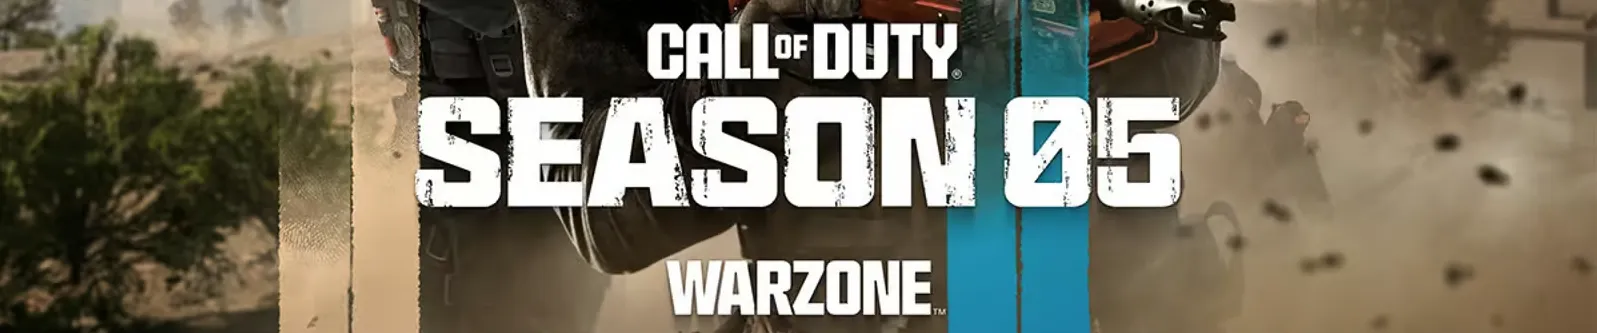 Call of duty warzone 2 season 5 logo